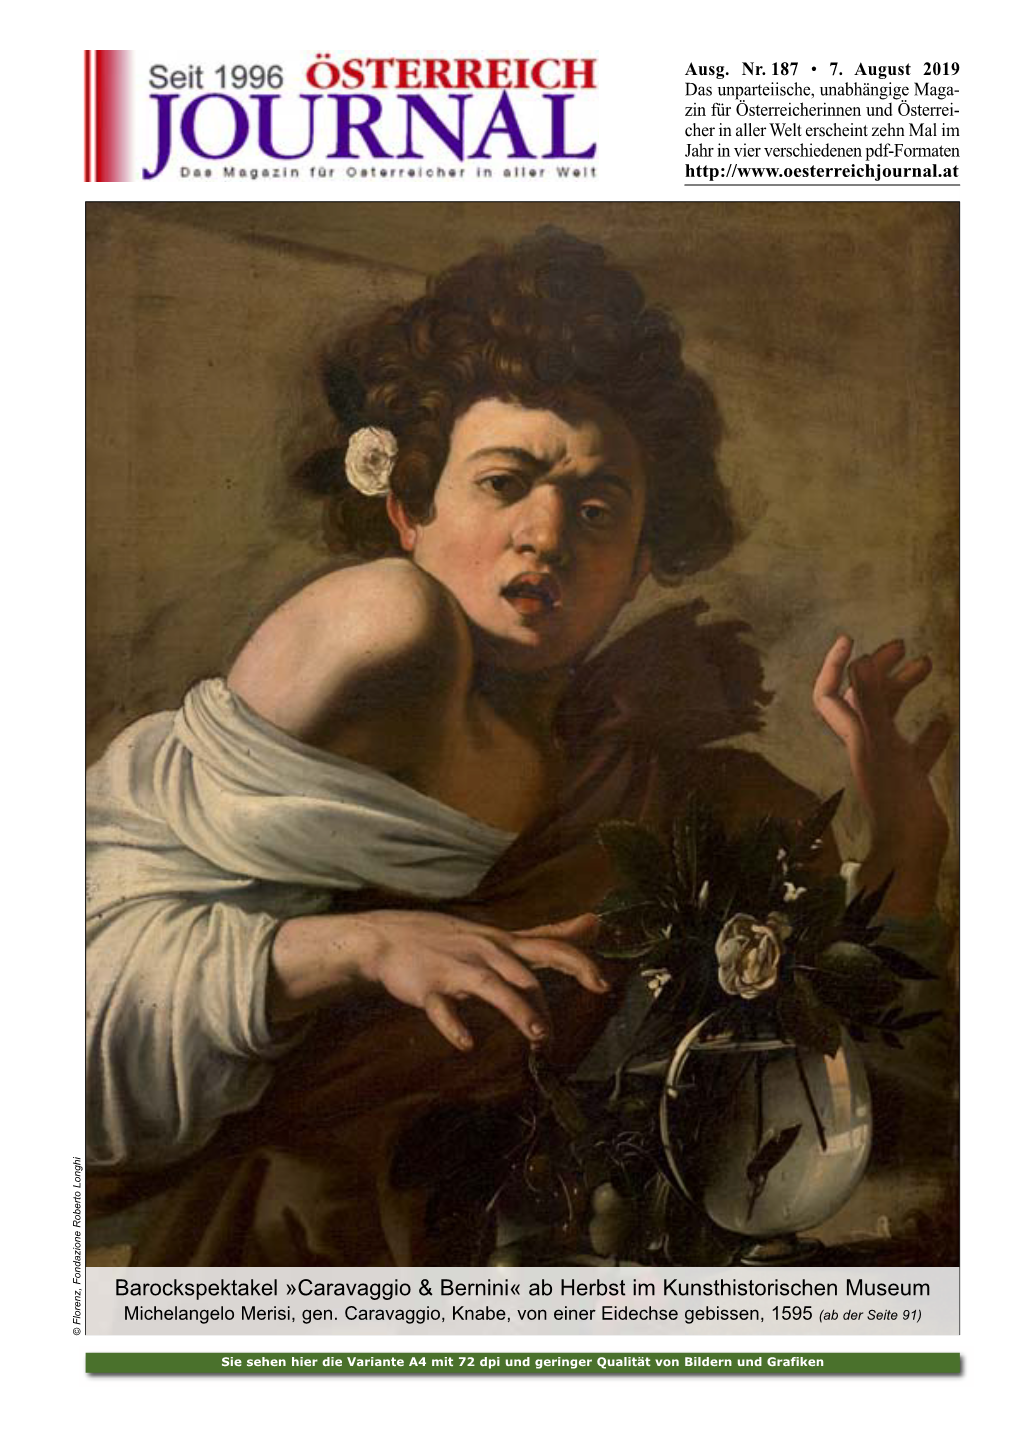 Barockspektakel »Caravaggio & Bernini« Ab Herbst Im Kunsthistorischen Museum Michelangelo Merisi, Gen